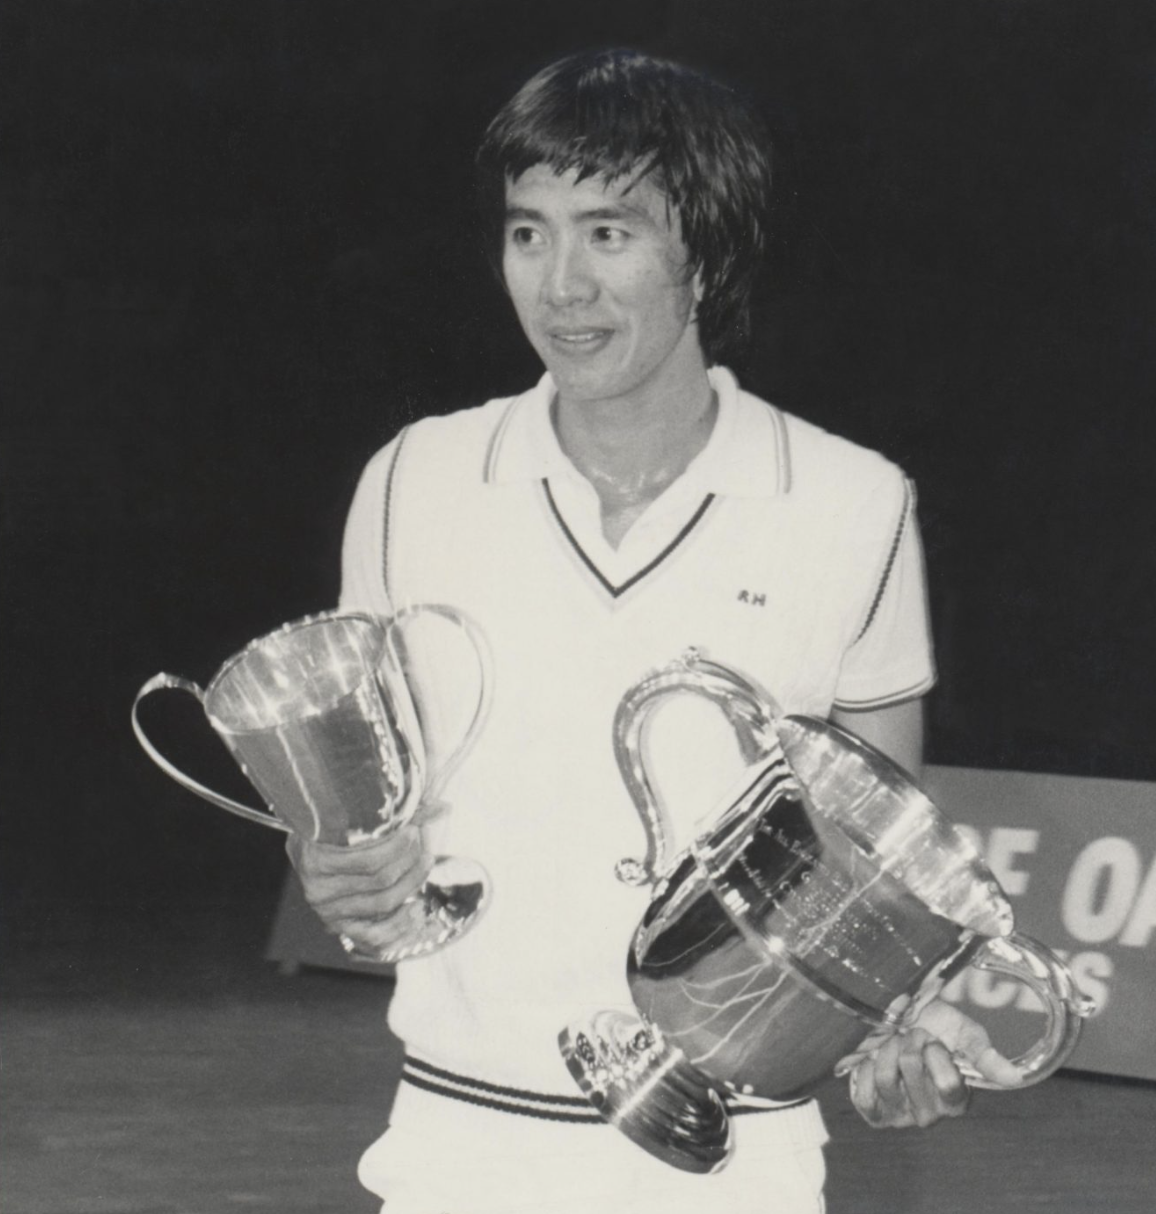 Rudy Hartono memenangkan piala All England 1968 sampai 1974. (Sumber foto: Badminton Museum/Peter Richardson)